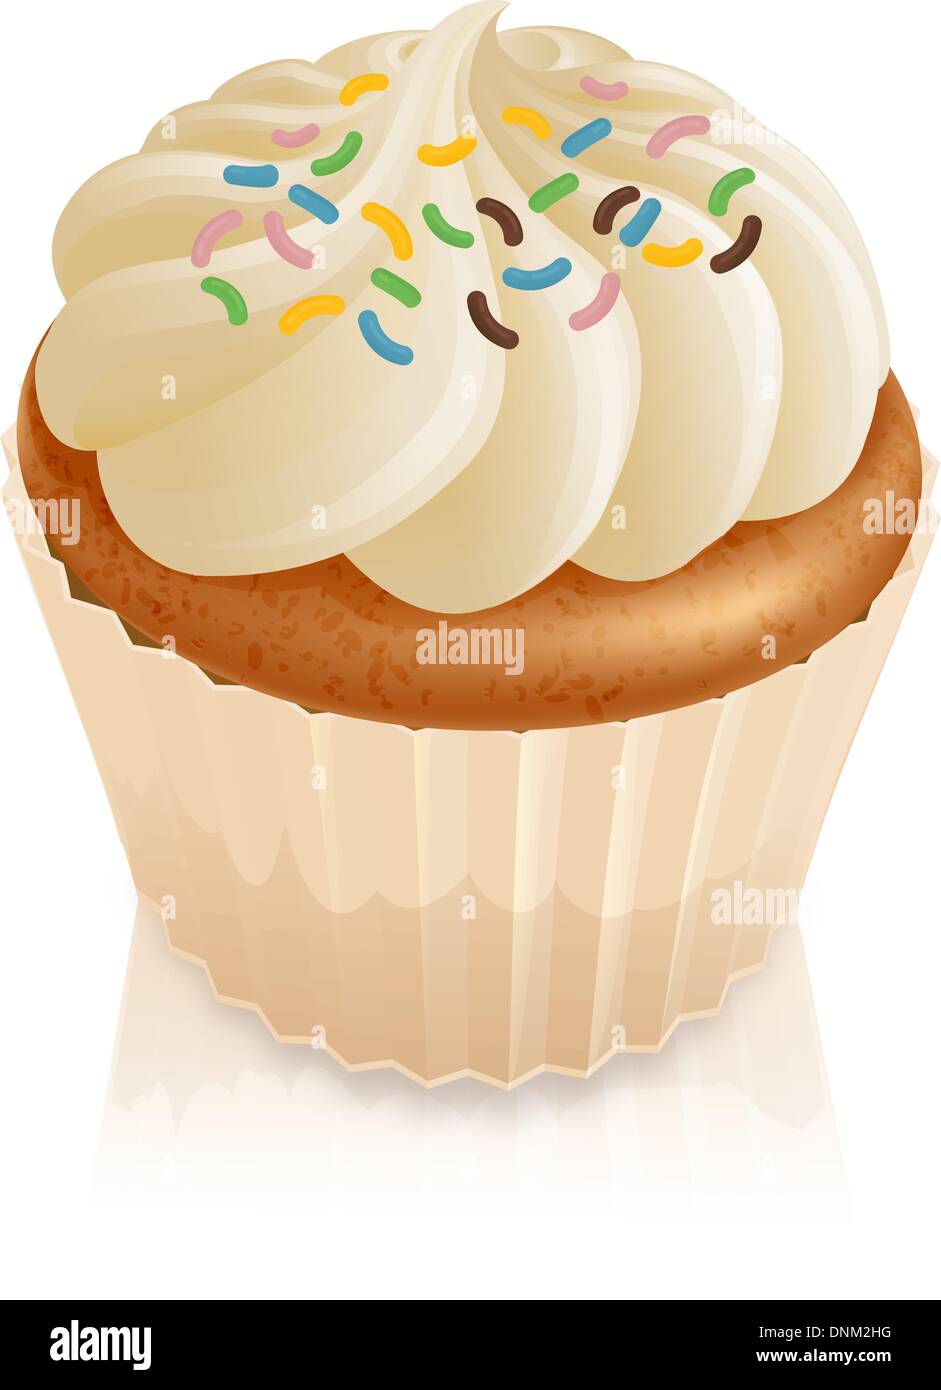 Abbildung von einer Fee Kuchen Cupcake mit bunten Streuseln Stock Vektor